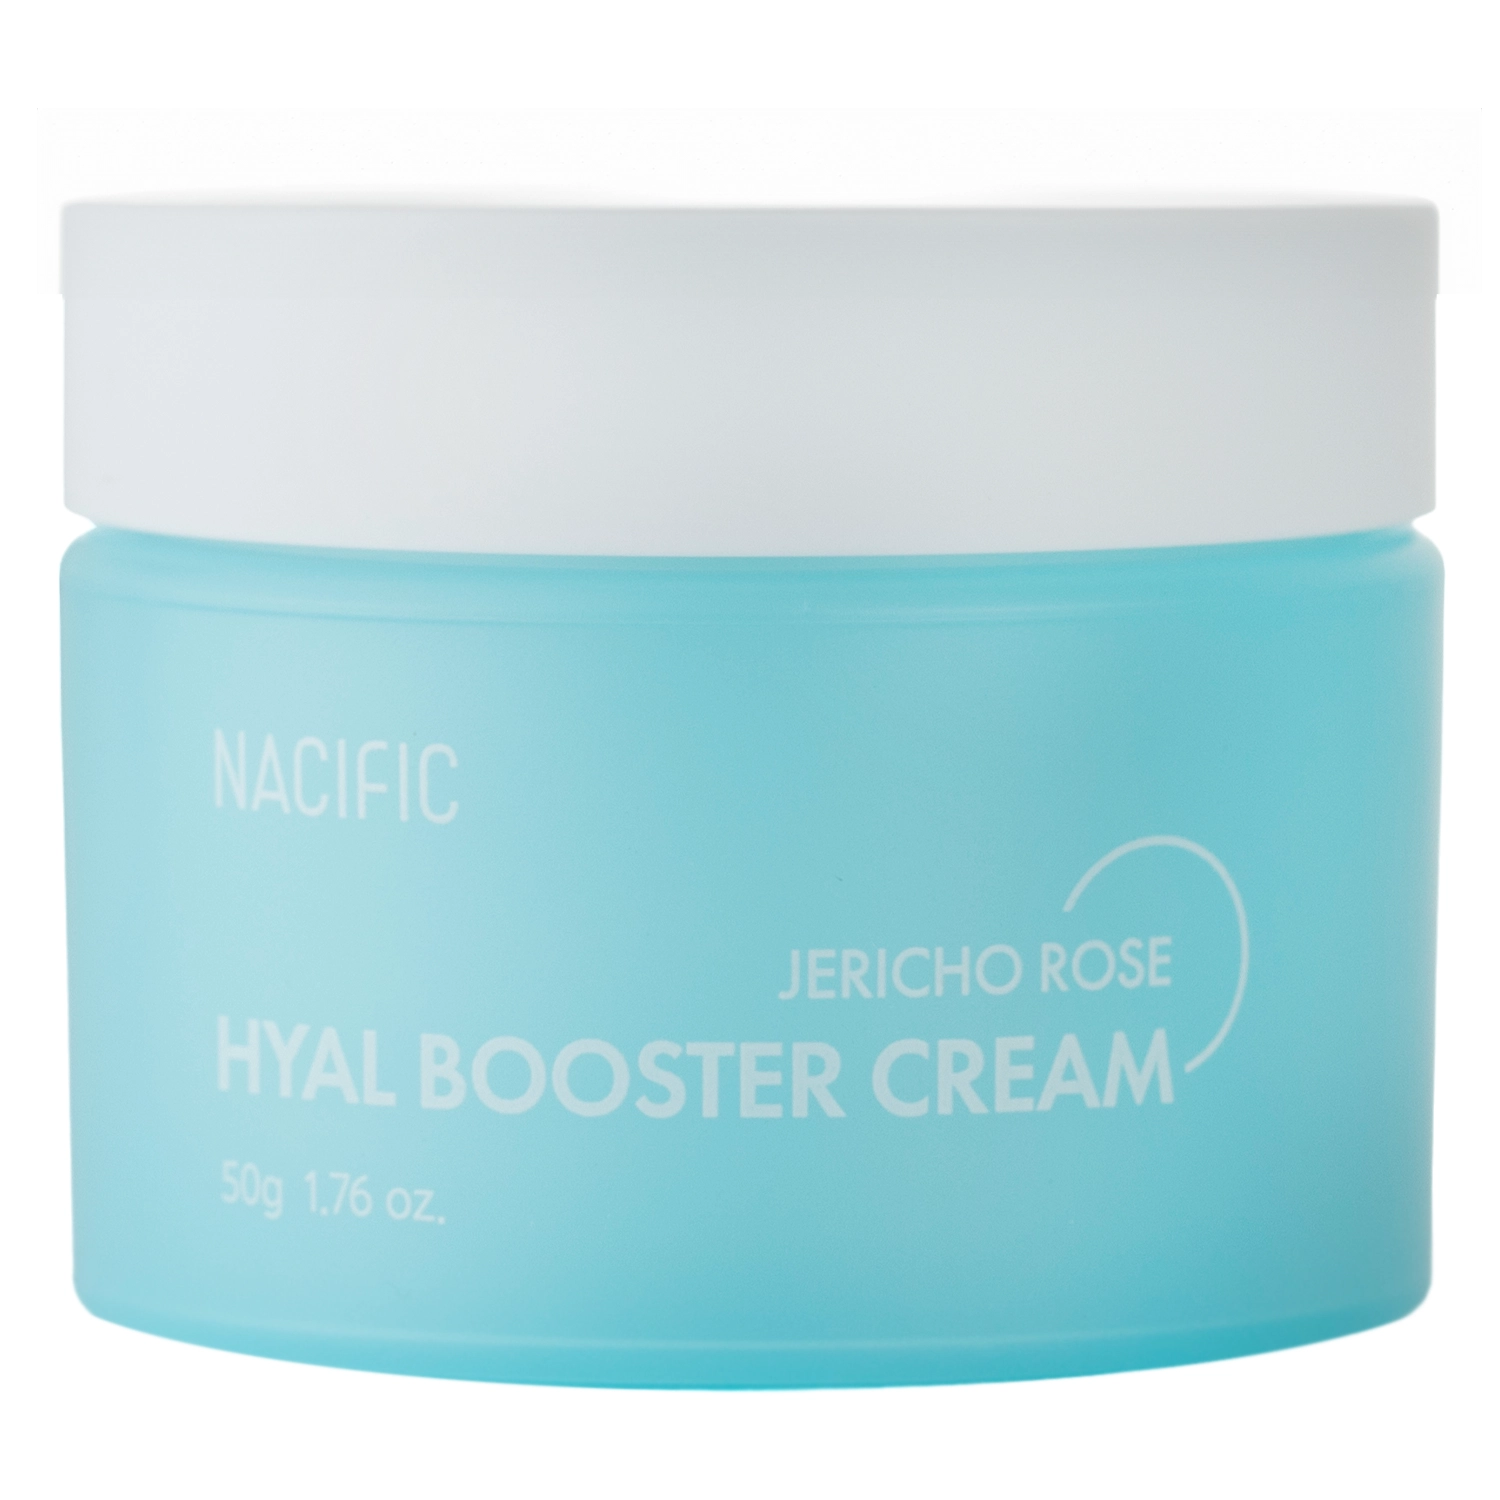 Nacific - Hyal Booster Cream - Зволожувальний крем для обличчя з екстрактом єрихонської троянди - 50g